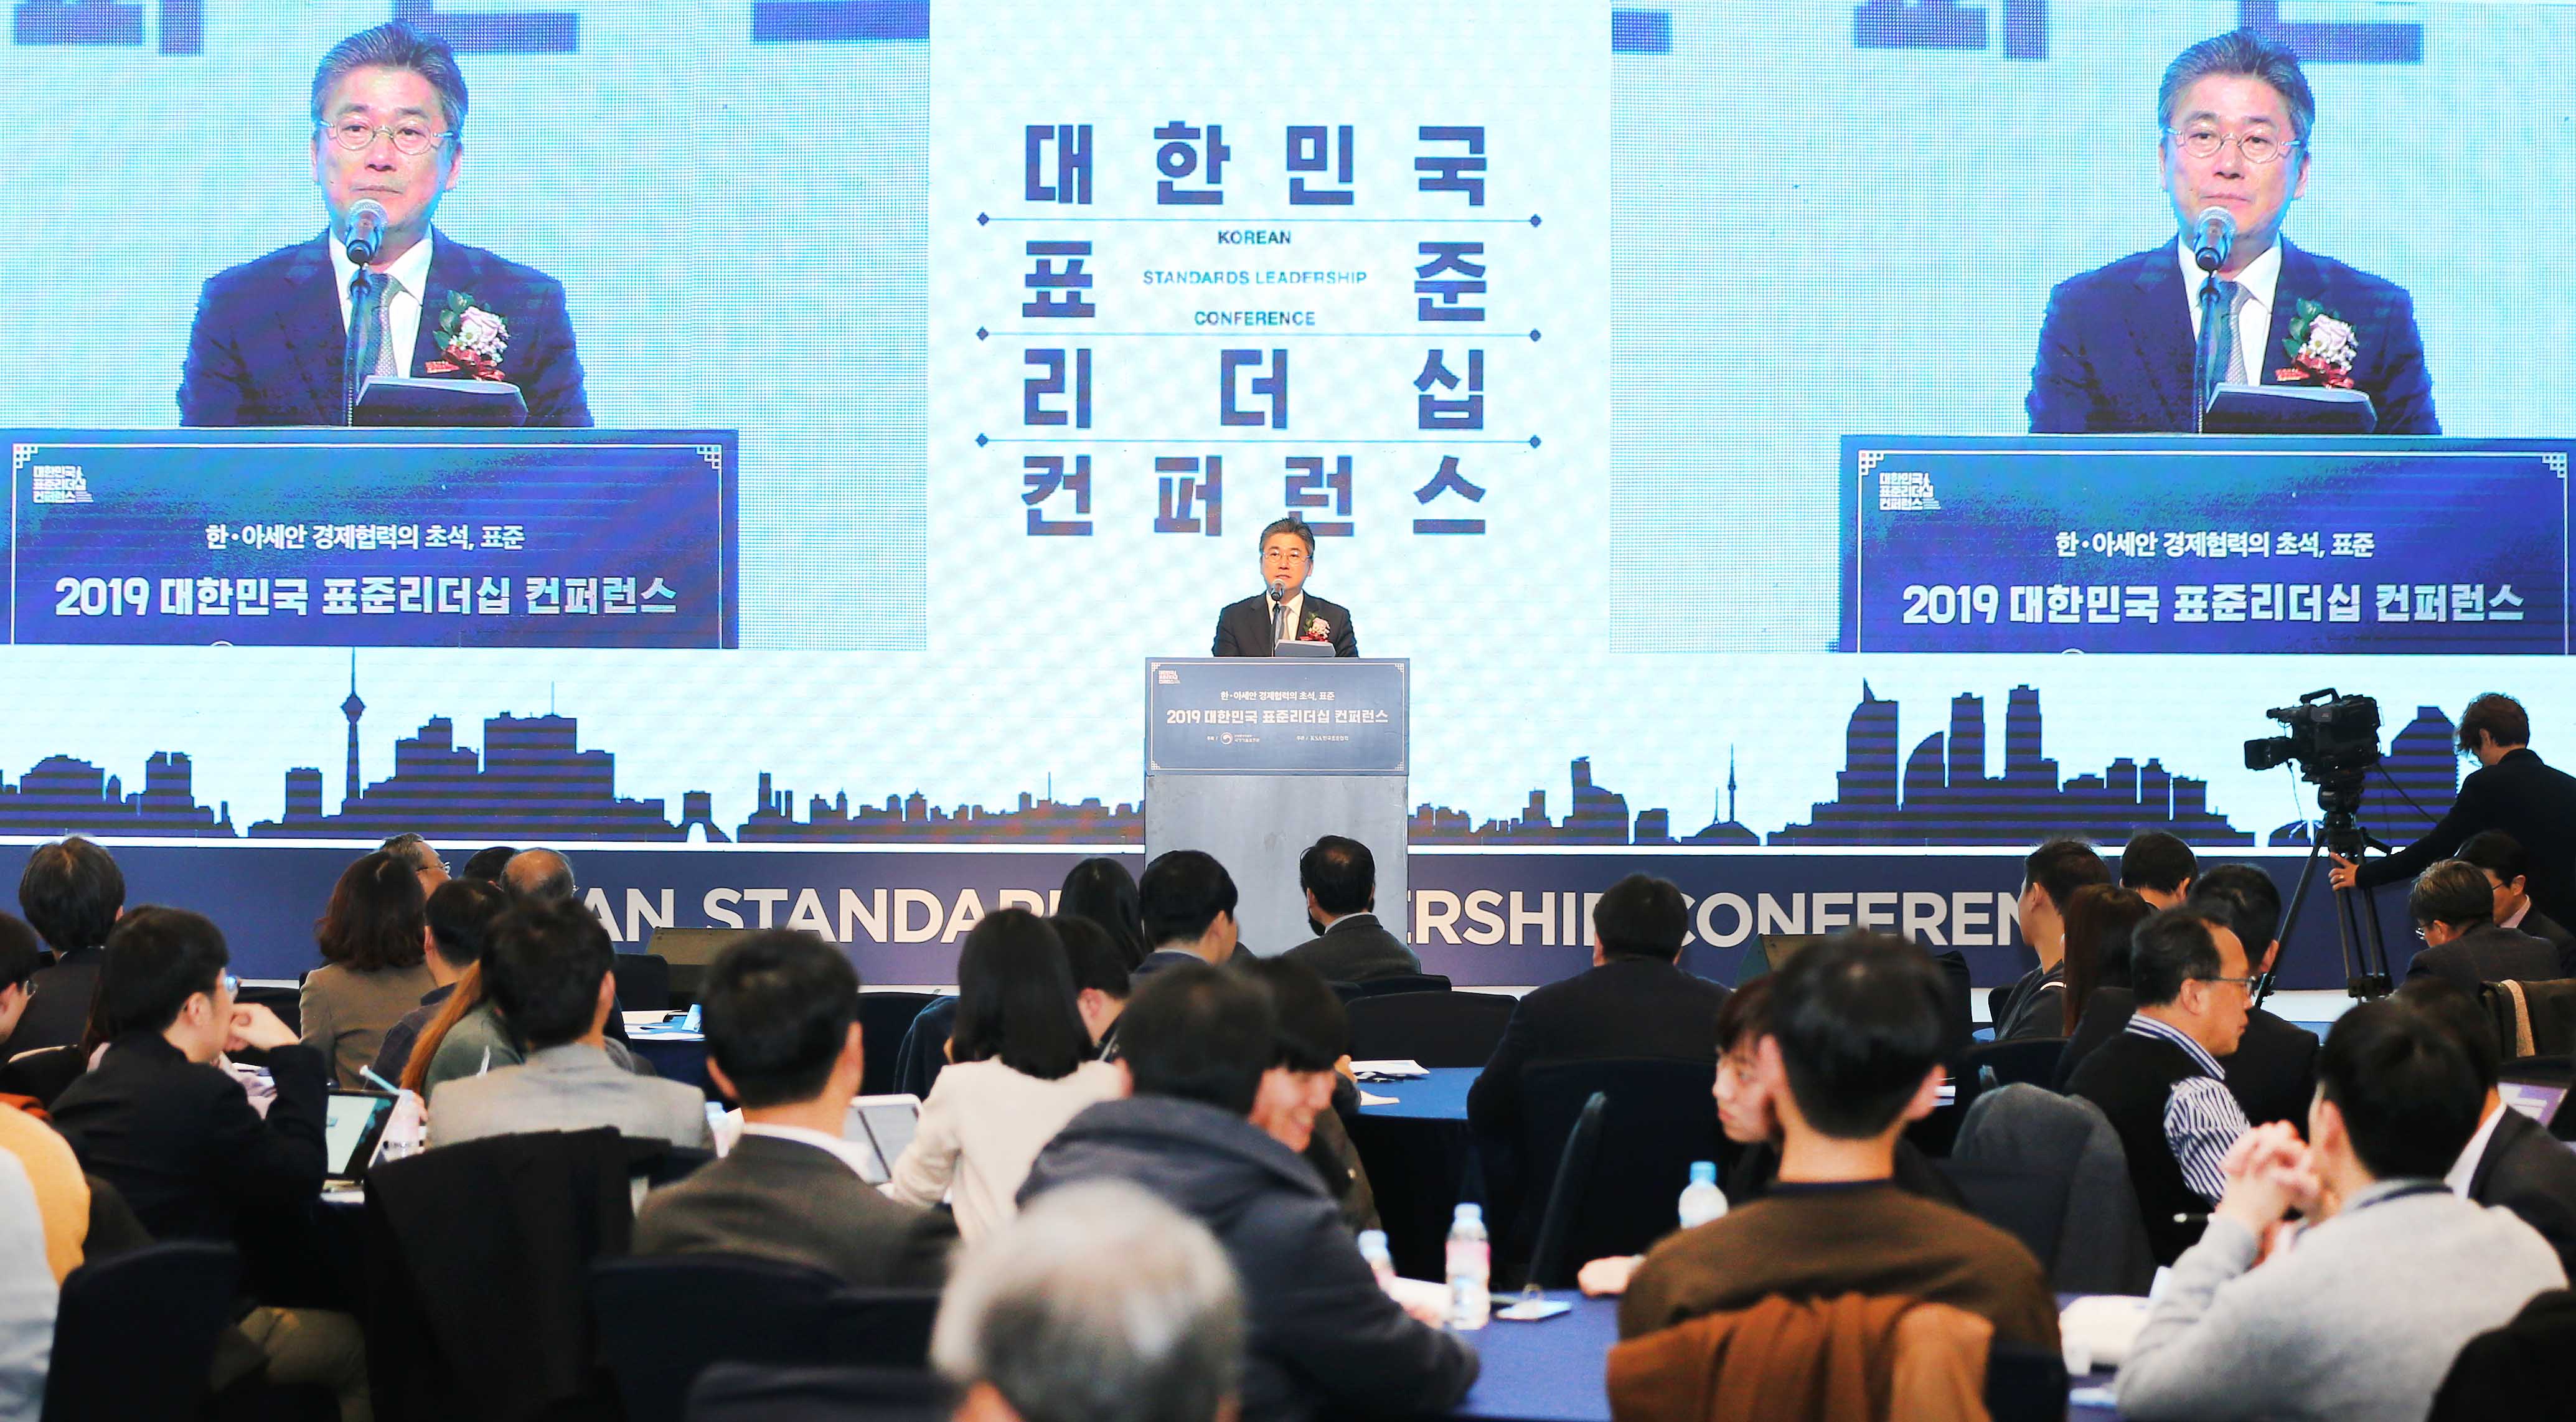 2019 표준 리더쉽 컨퍼런스 개최